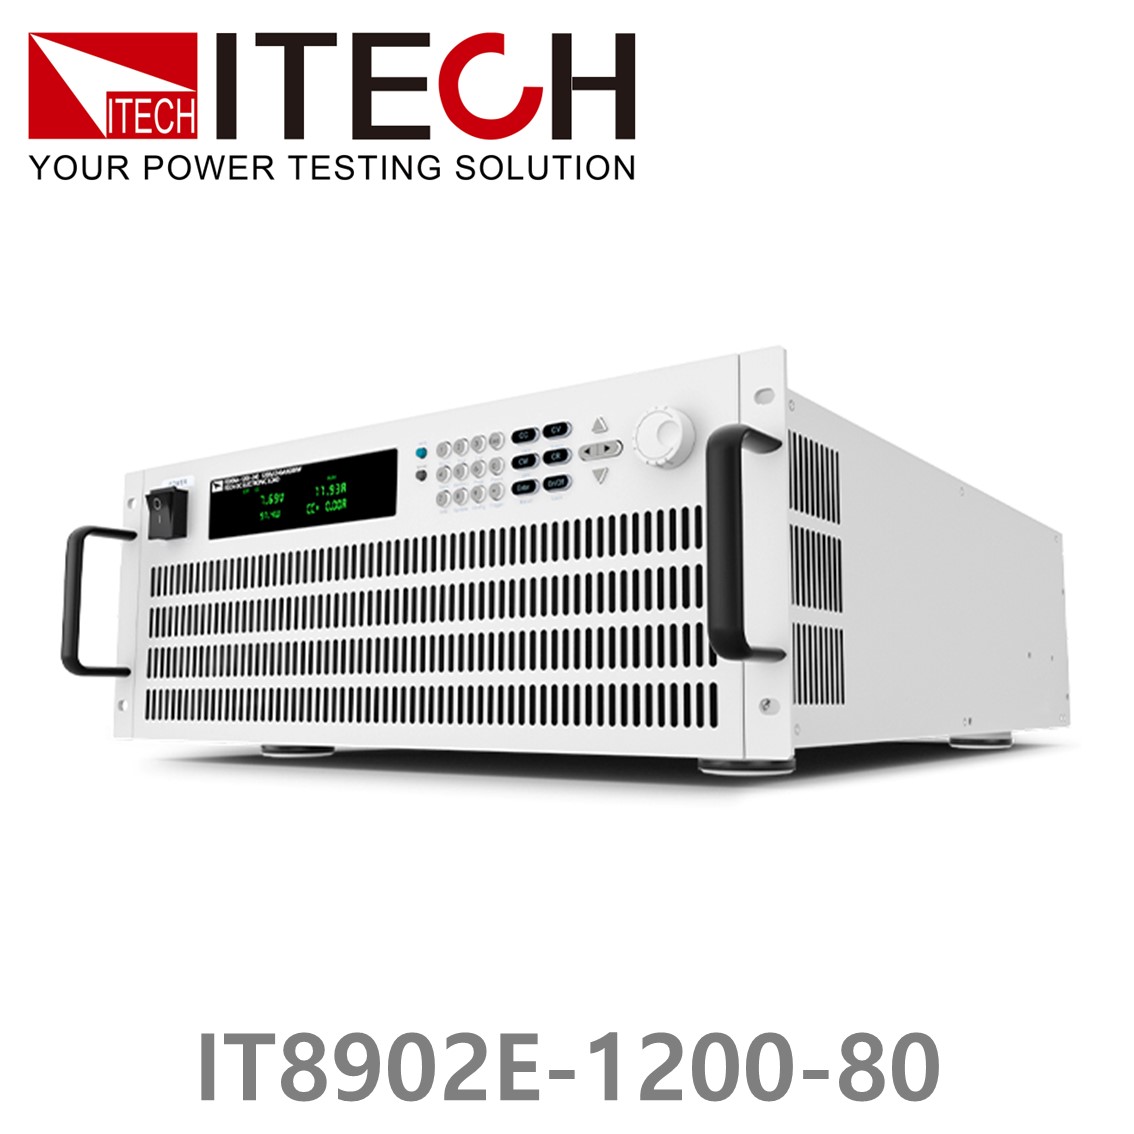 [ ITECH ] IT8902E-1200-80  고성능 고전력 DC 전자로드 1200V/80A/2kW (4U)